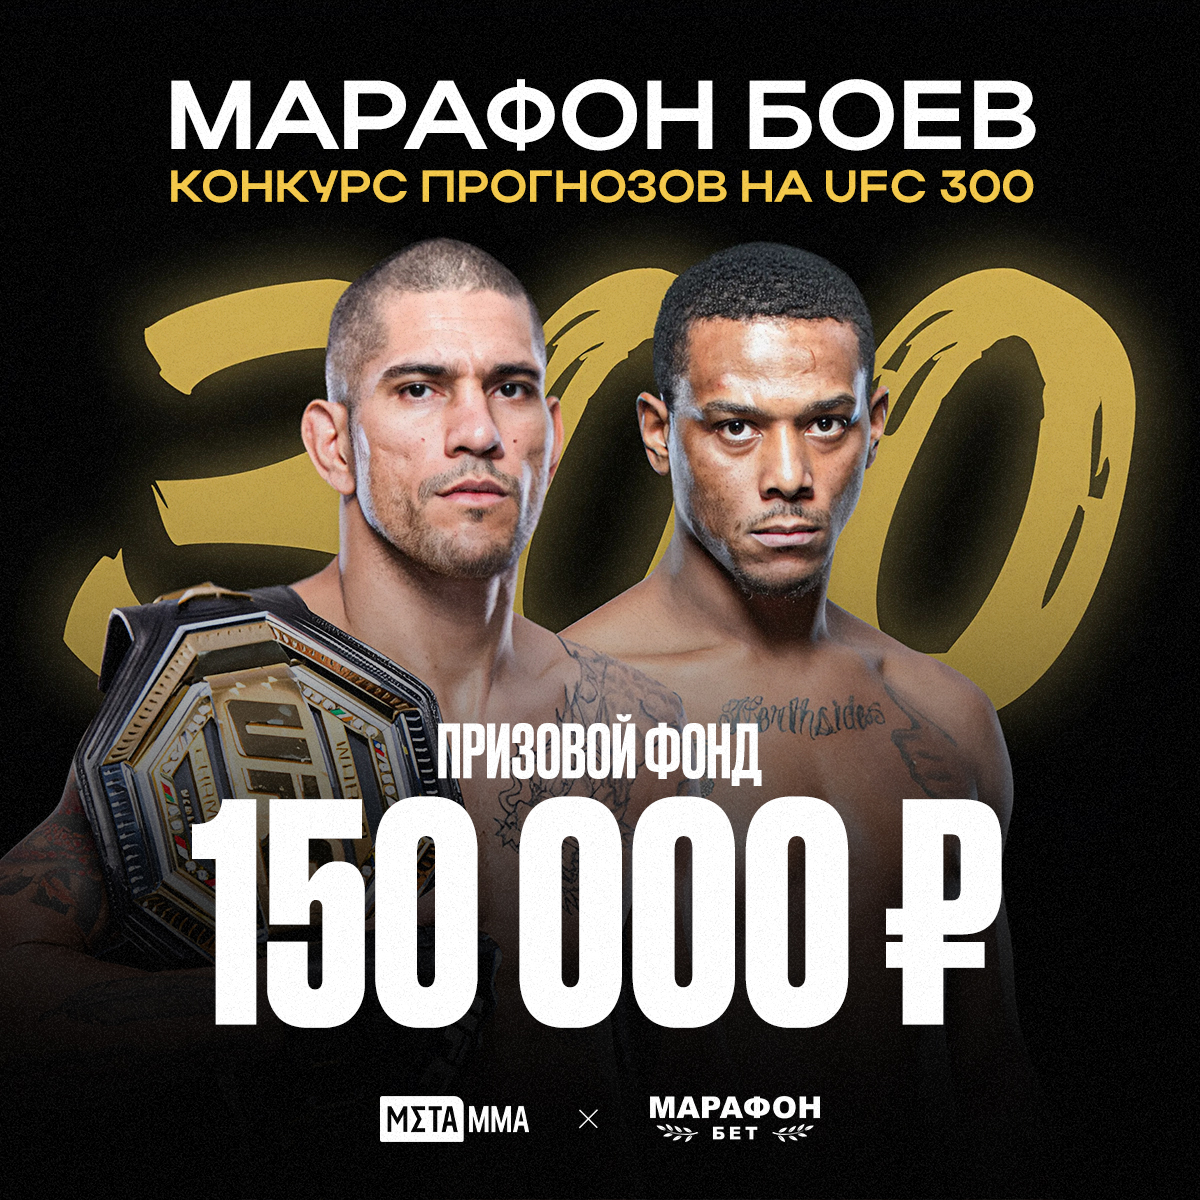 Прими участие в бесплатном конкурсе прогнозов на UFC 300 и выиграй крутой приз